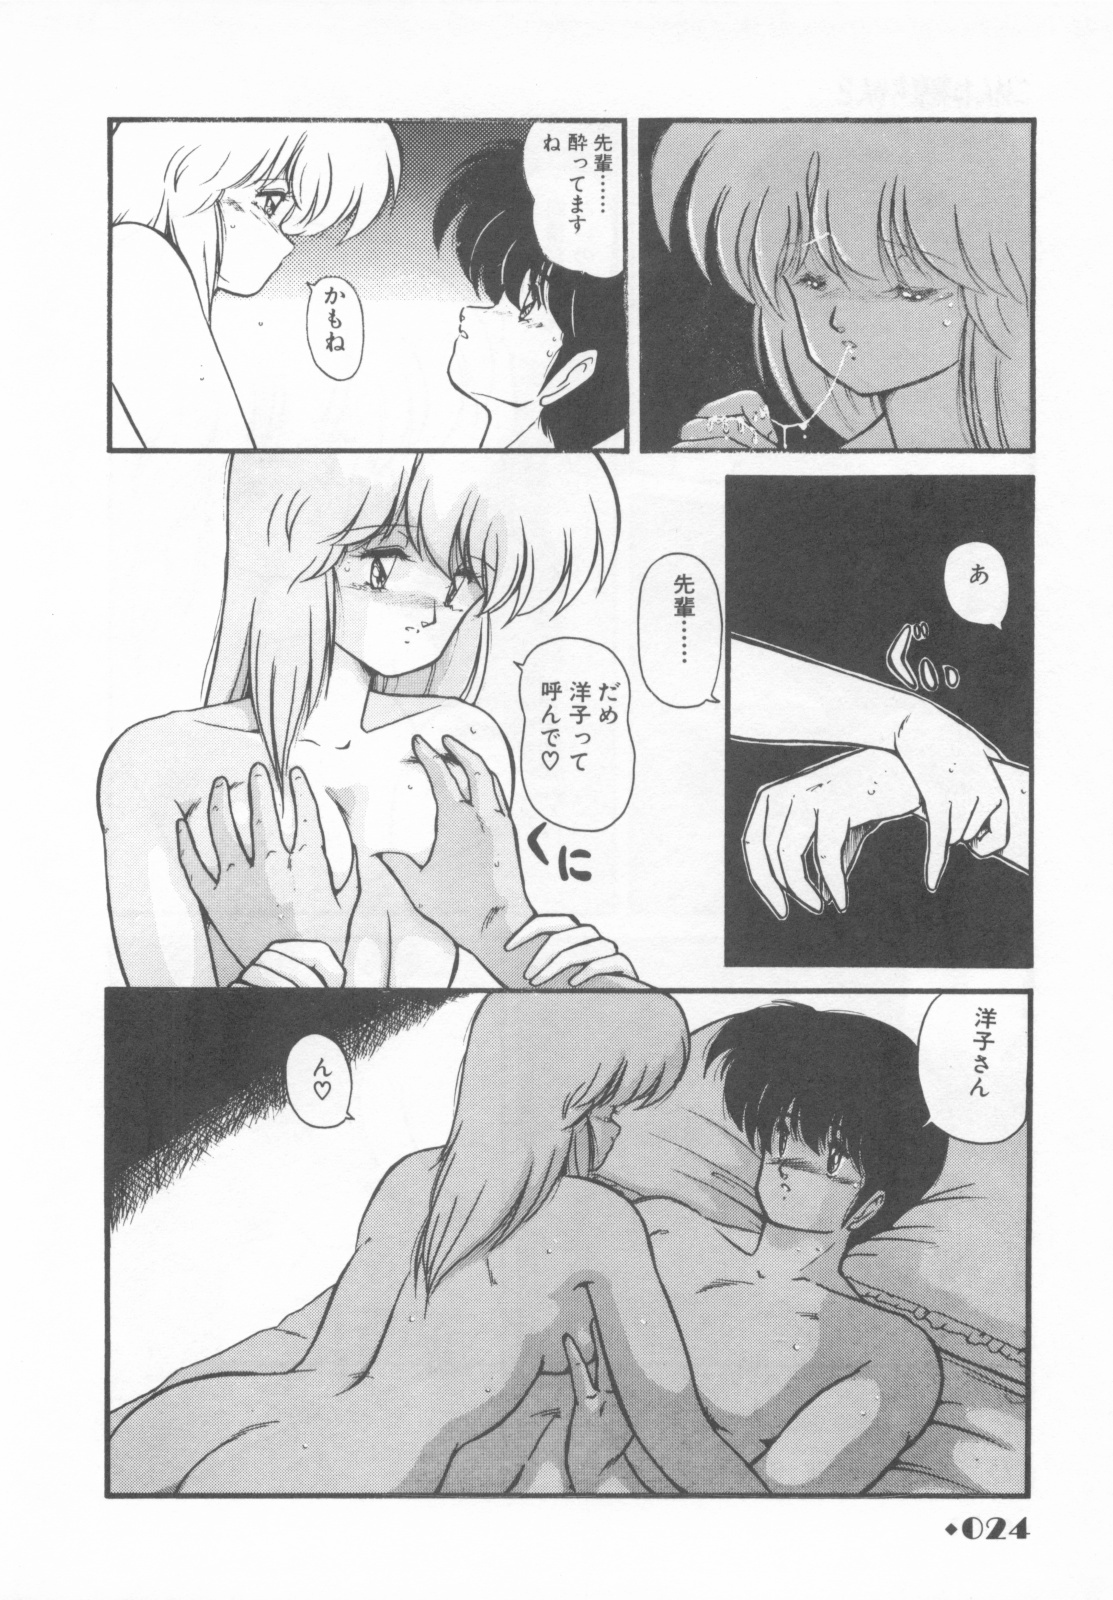 [Makuwa] Gomenne Mina-chan 1 page 26 full